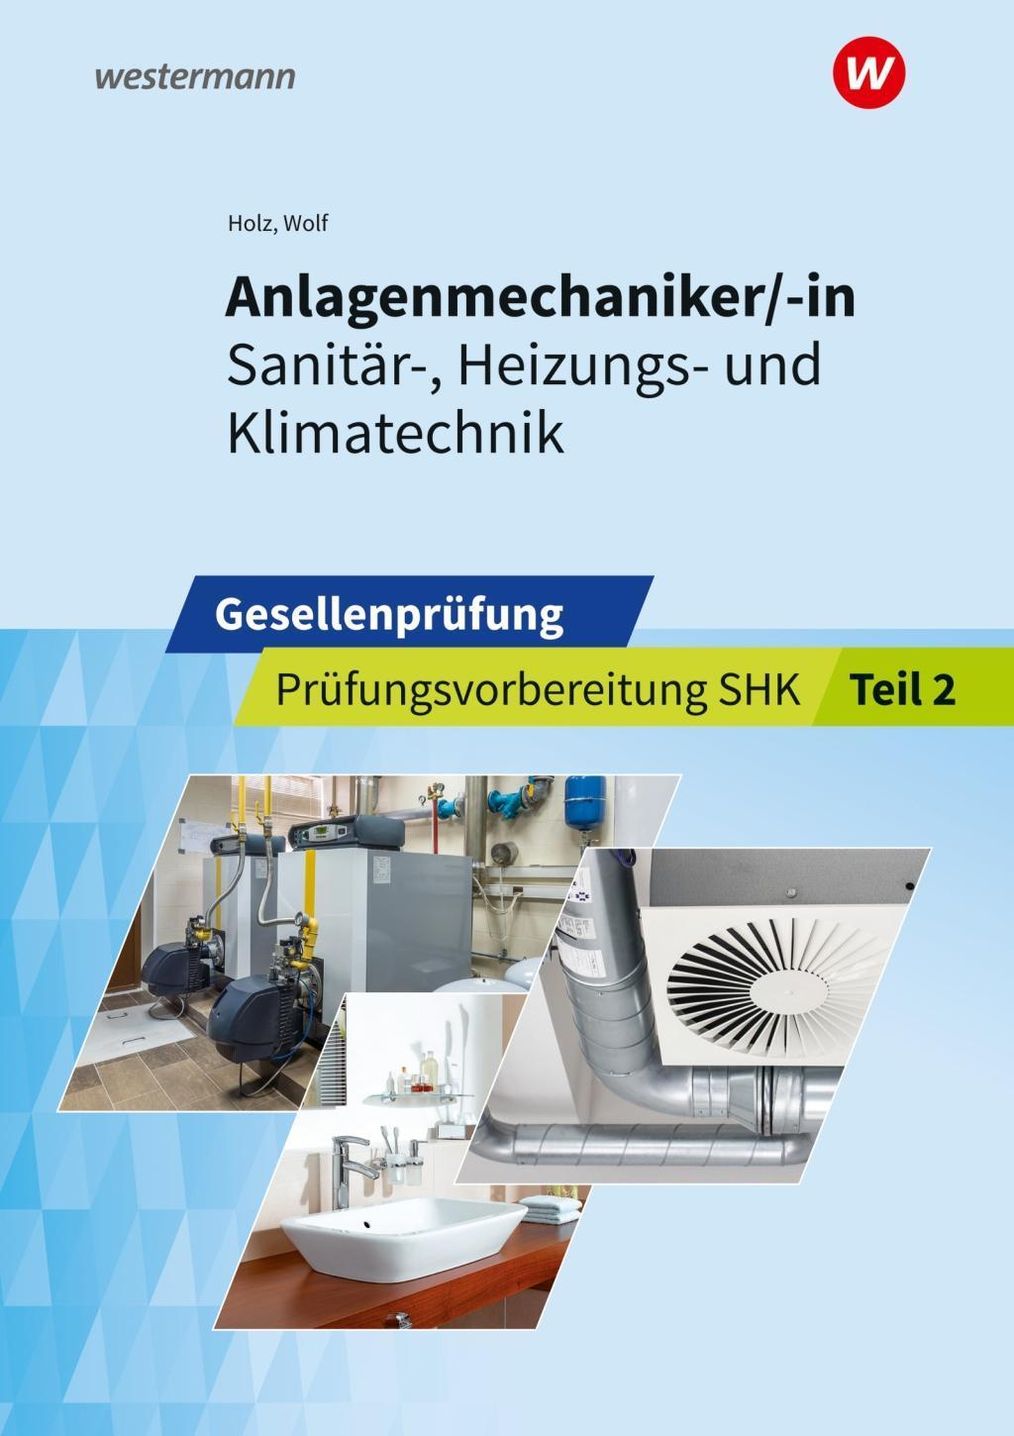 Anlagenmechaniker -in Sanitär-, Heizungs- und Klimatechnik kaufen